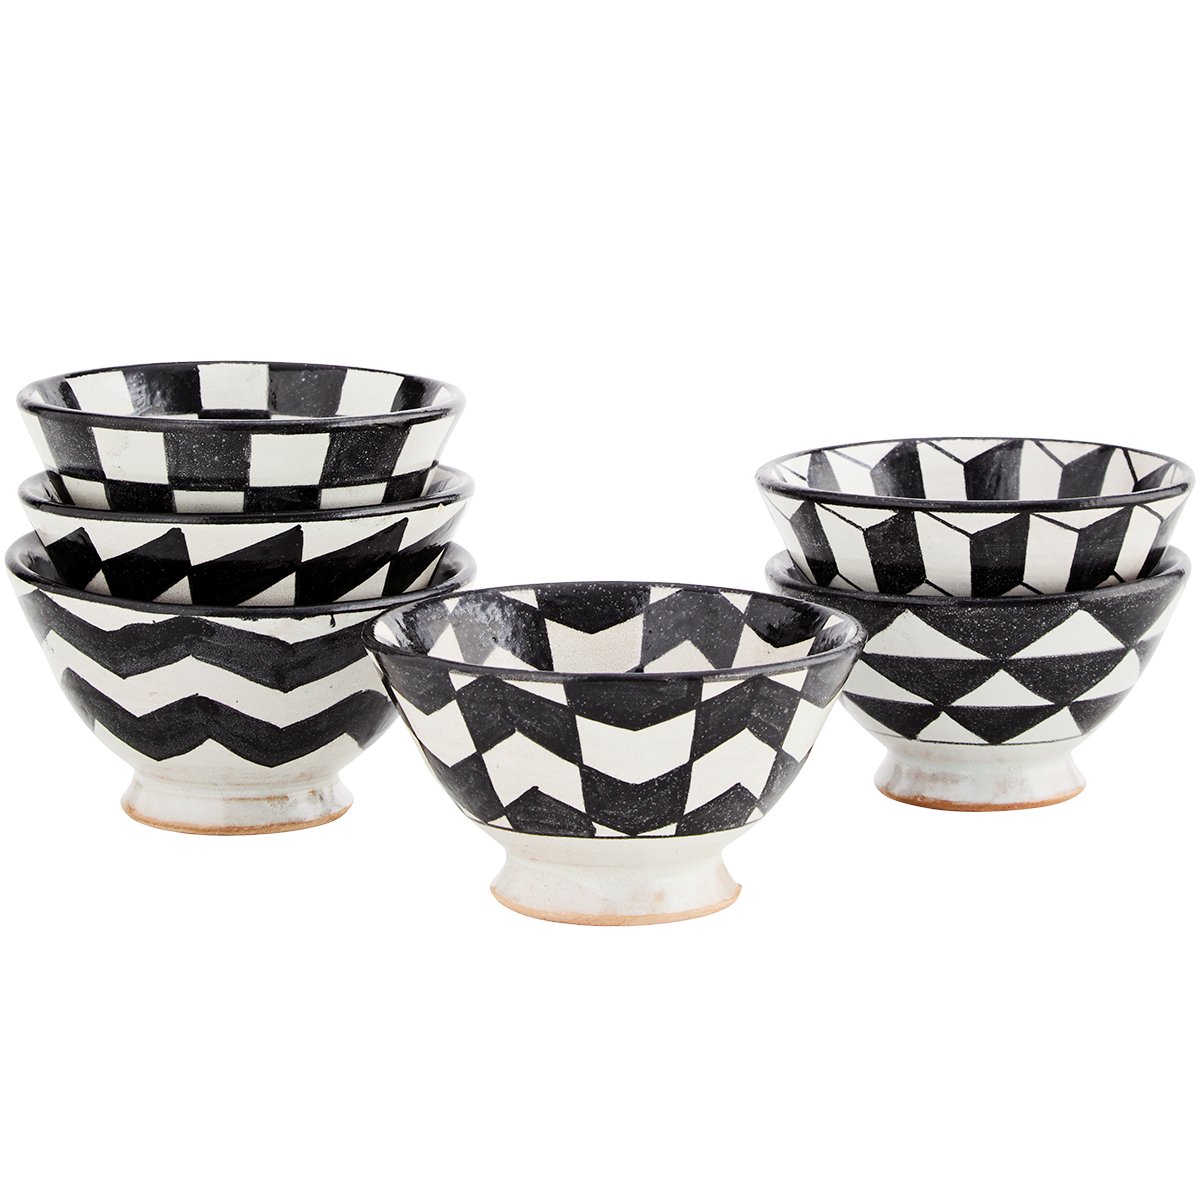 Black and white stoneware bowl - Natalia Willmott